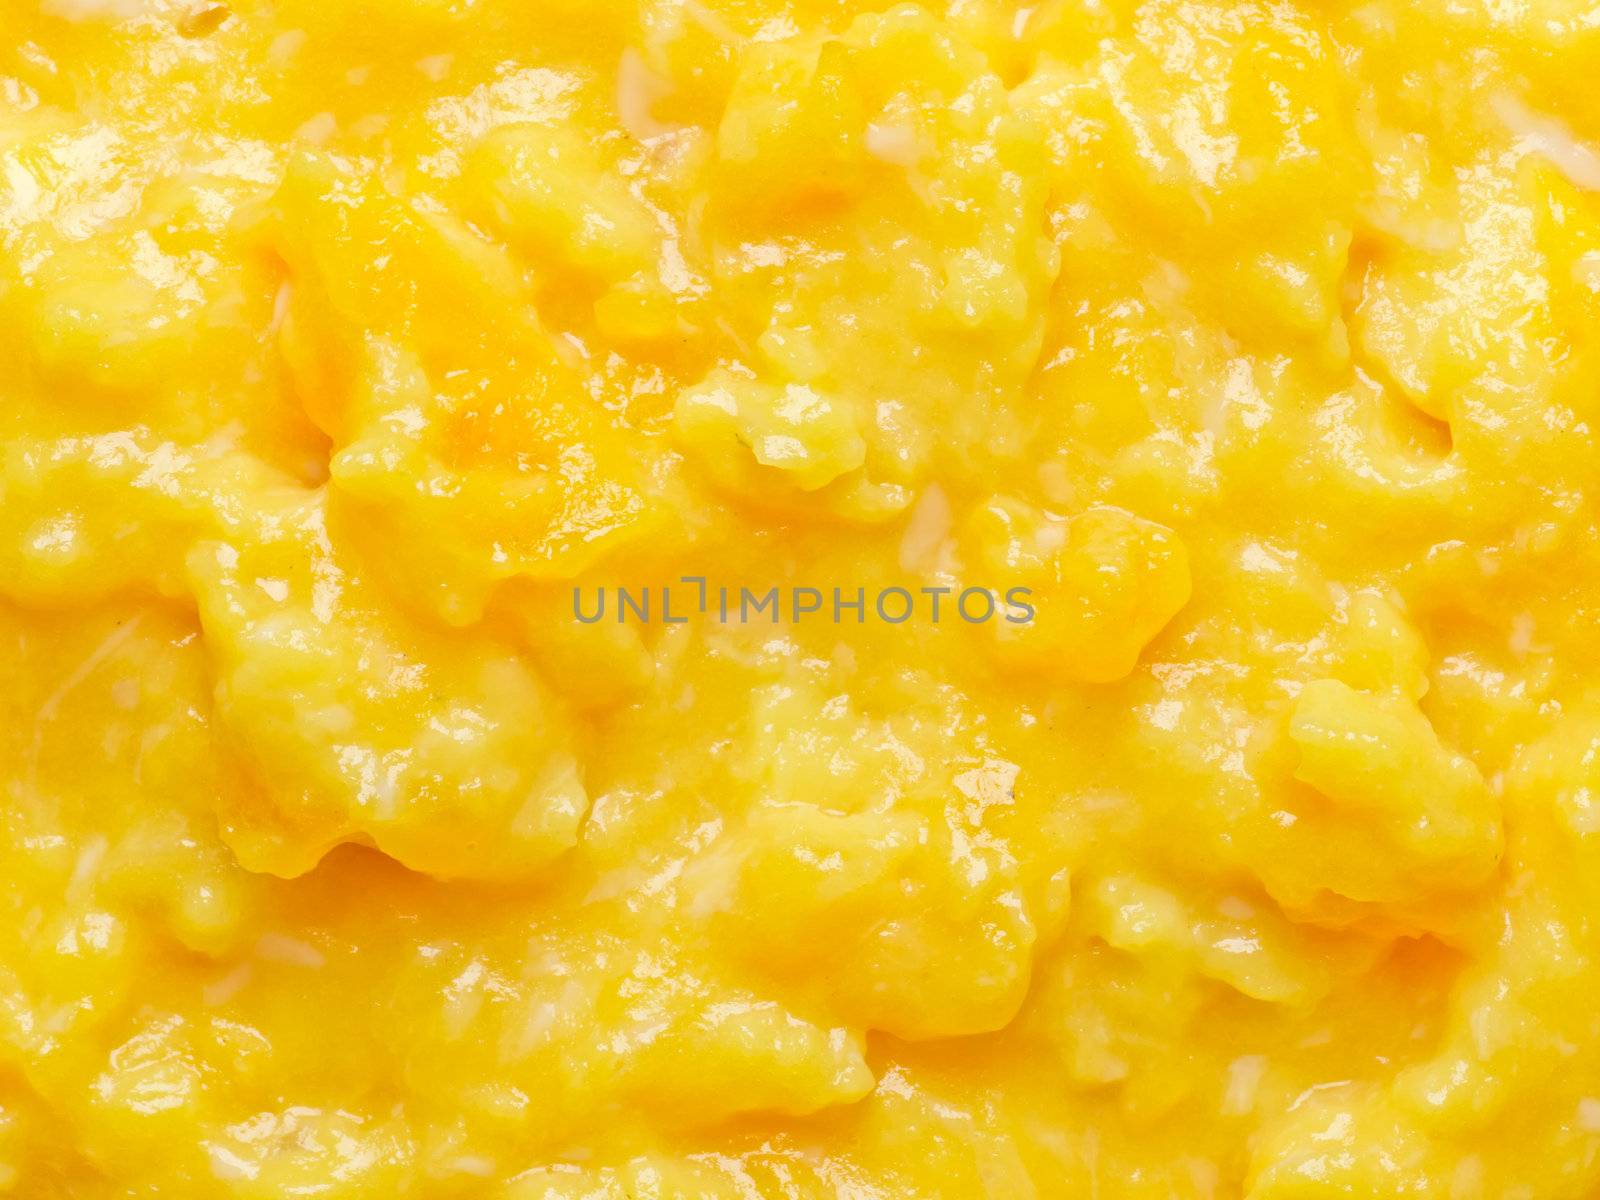 scrambled eggs by zkruger